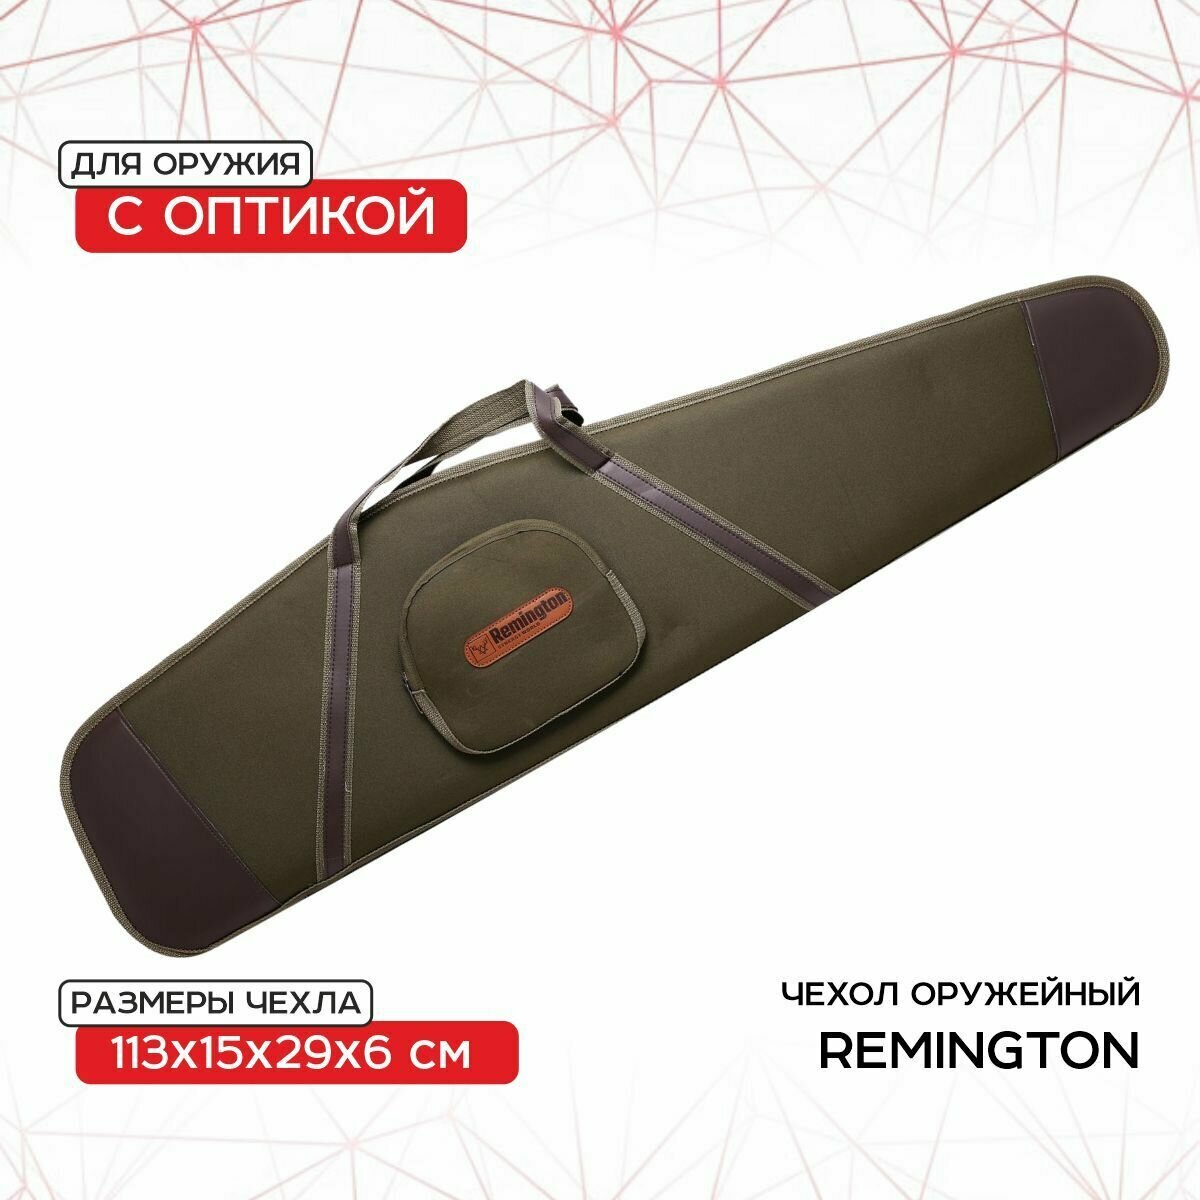 Чехол оружейный Remington с оптикой 113х15х29х6 (зеленый) GB-9050A113